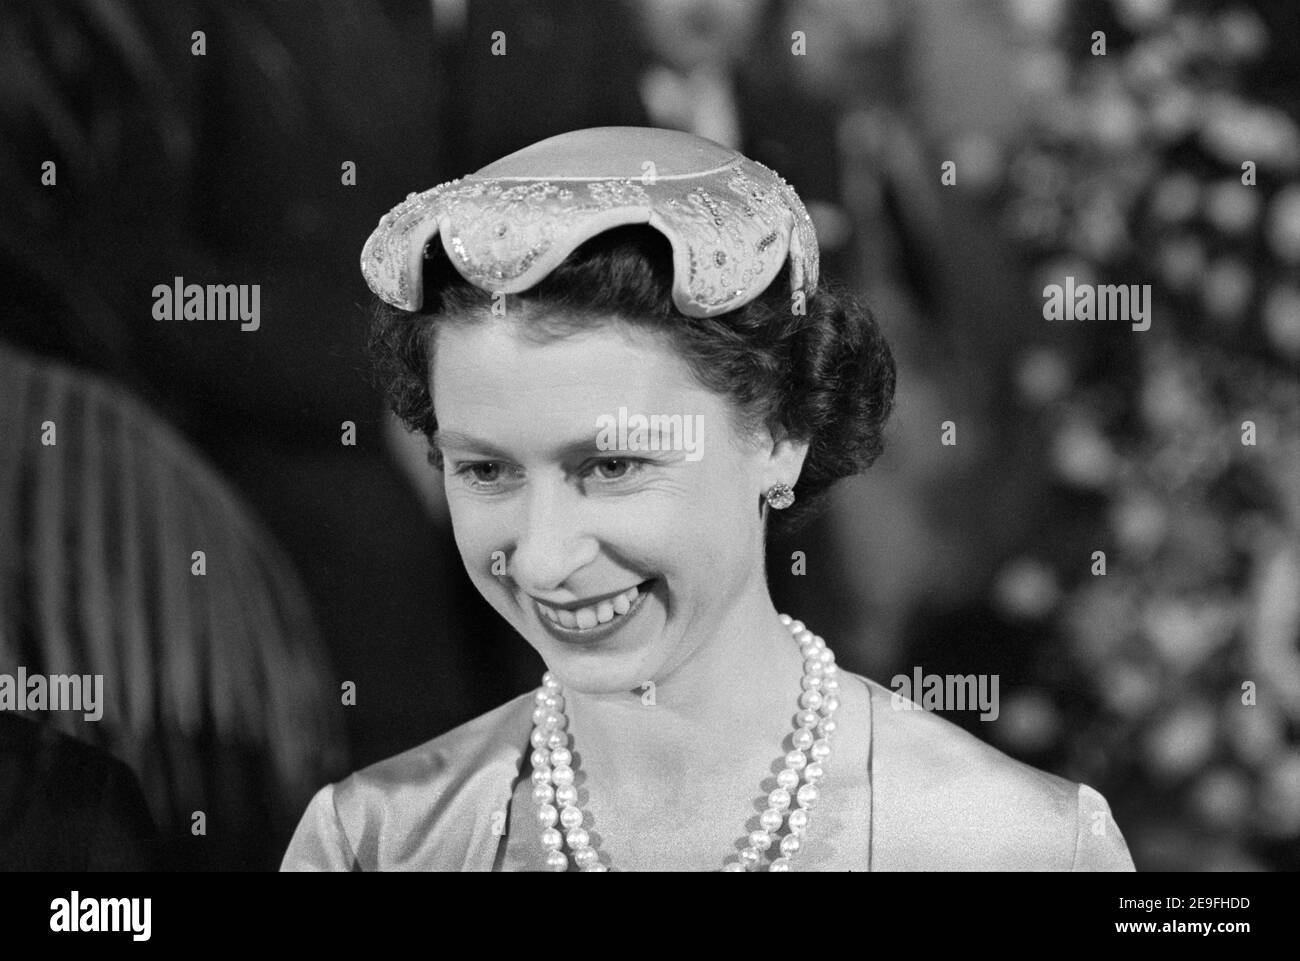 Queen Elizabeth II, Head and Shoulders Portrait during visit to Washington, D.C., USA, Warren K. Leffler, October 17, 1957 Stock Photo